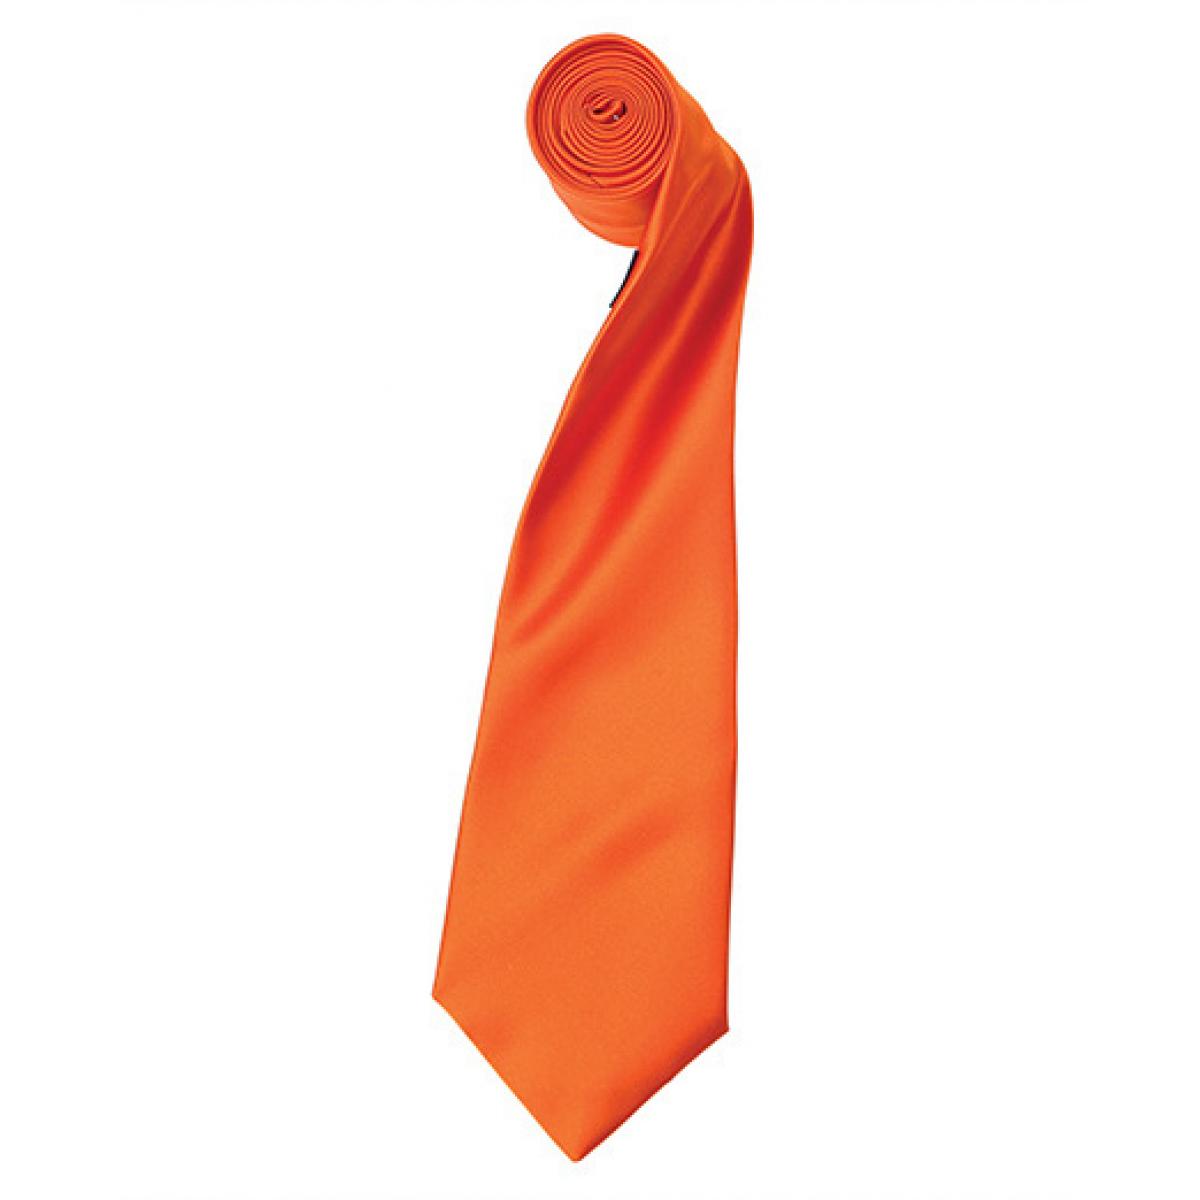 Hersteller: Premier Workwear Herstellernummer: PR750 Artikelbezeichnung: Satin Tie ´Colours´ / 144 x 8,5 cm Farbe: Terracotta (ca. Pantone 159)